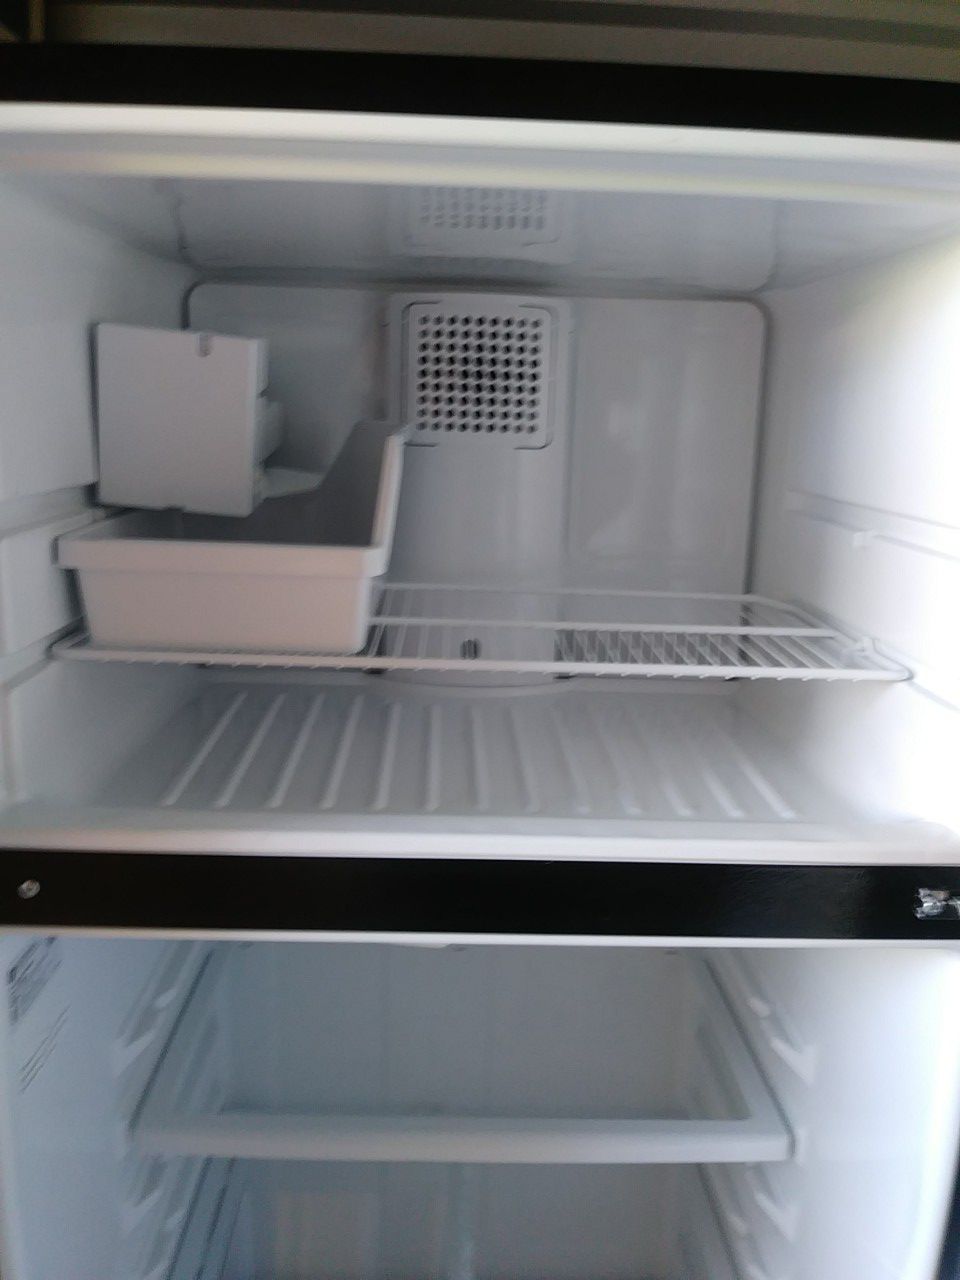 GE Deluxe refrigerator